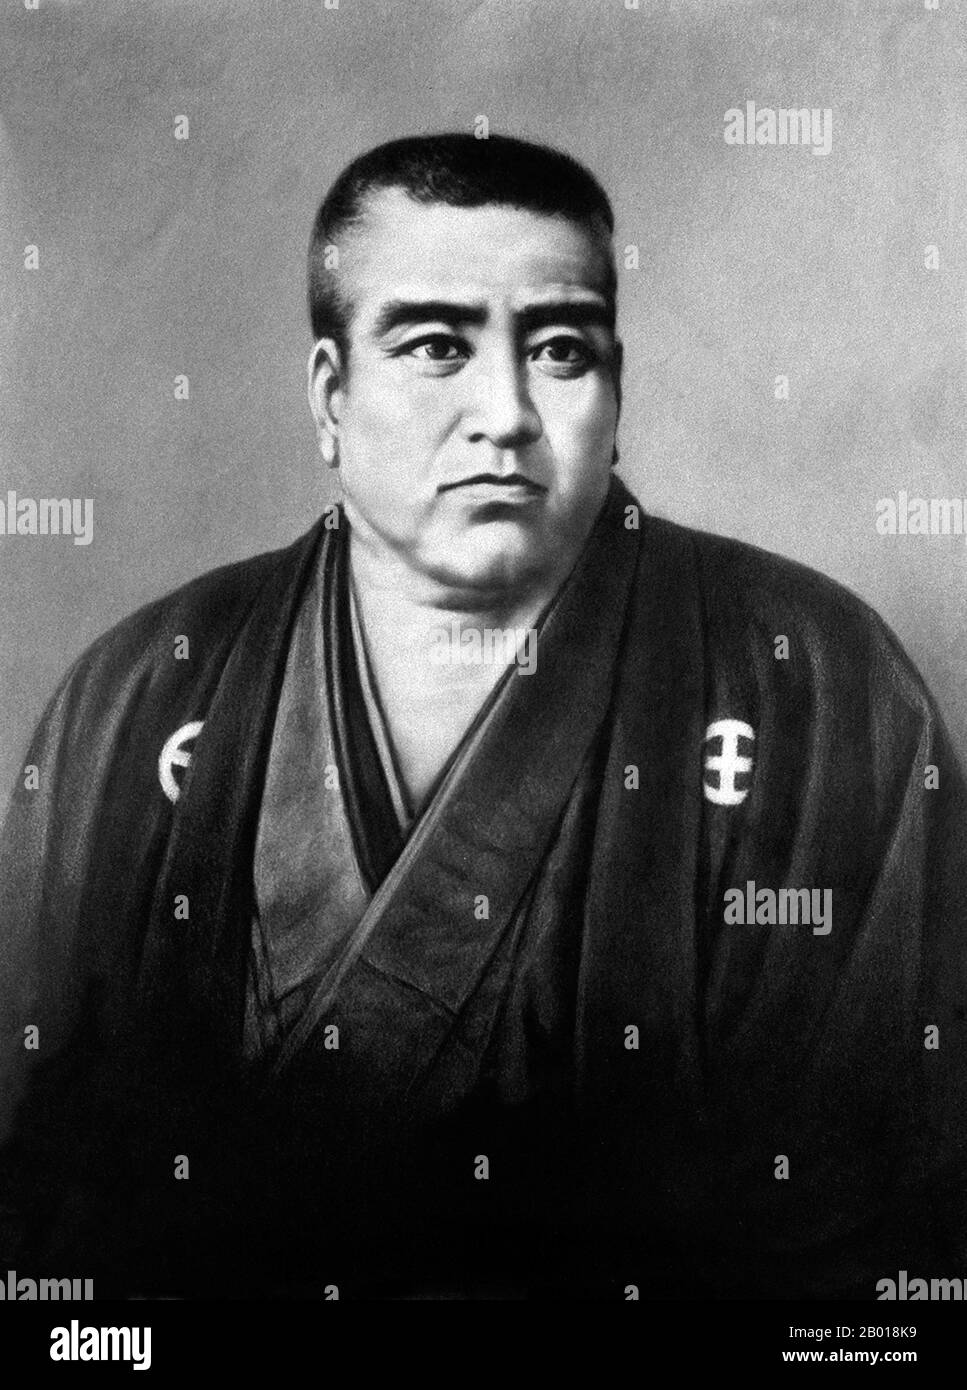 Giappone: Saigō Takamori (23 gennaio 1828 - 24 settembre 1877), samurai e nobiluomo del tardo periodo Edo e dell'inizio dell'era Meiji. È stato soprannominato l'ultimo vero samurai. Ritratto di C. Nakagawa, c.. 1870s. Saigō Takamori, nato Saigo Kokichi e nome letterario Saigo Nanshu, fu uno dei samurai più influenti della storia giapponese. Visse durante il tardo periodo Edo e l'inizio dell'era Meiji, e divenne un leader del restauro Meiji. In seguito condusse la ribellione fallita di Satsuma contro il governo Meiji, e commise seppuku durante la battaglia di Shiroyama. Divenne un simbolo e un eroe nazionale. Foto Stock